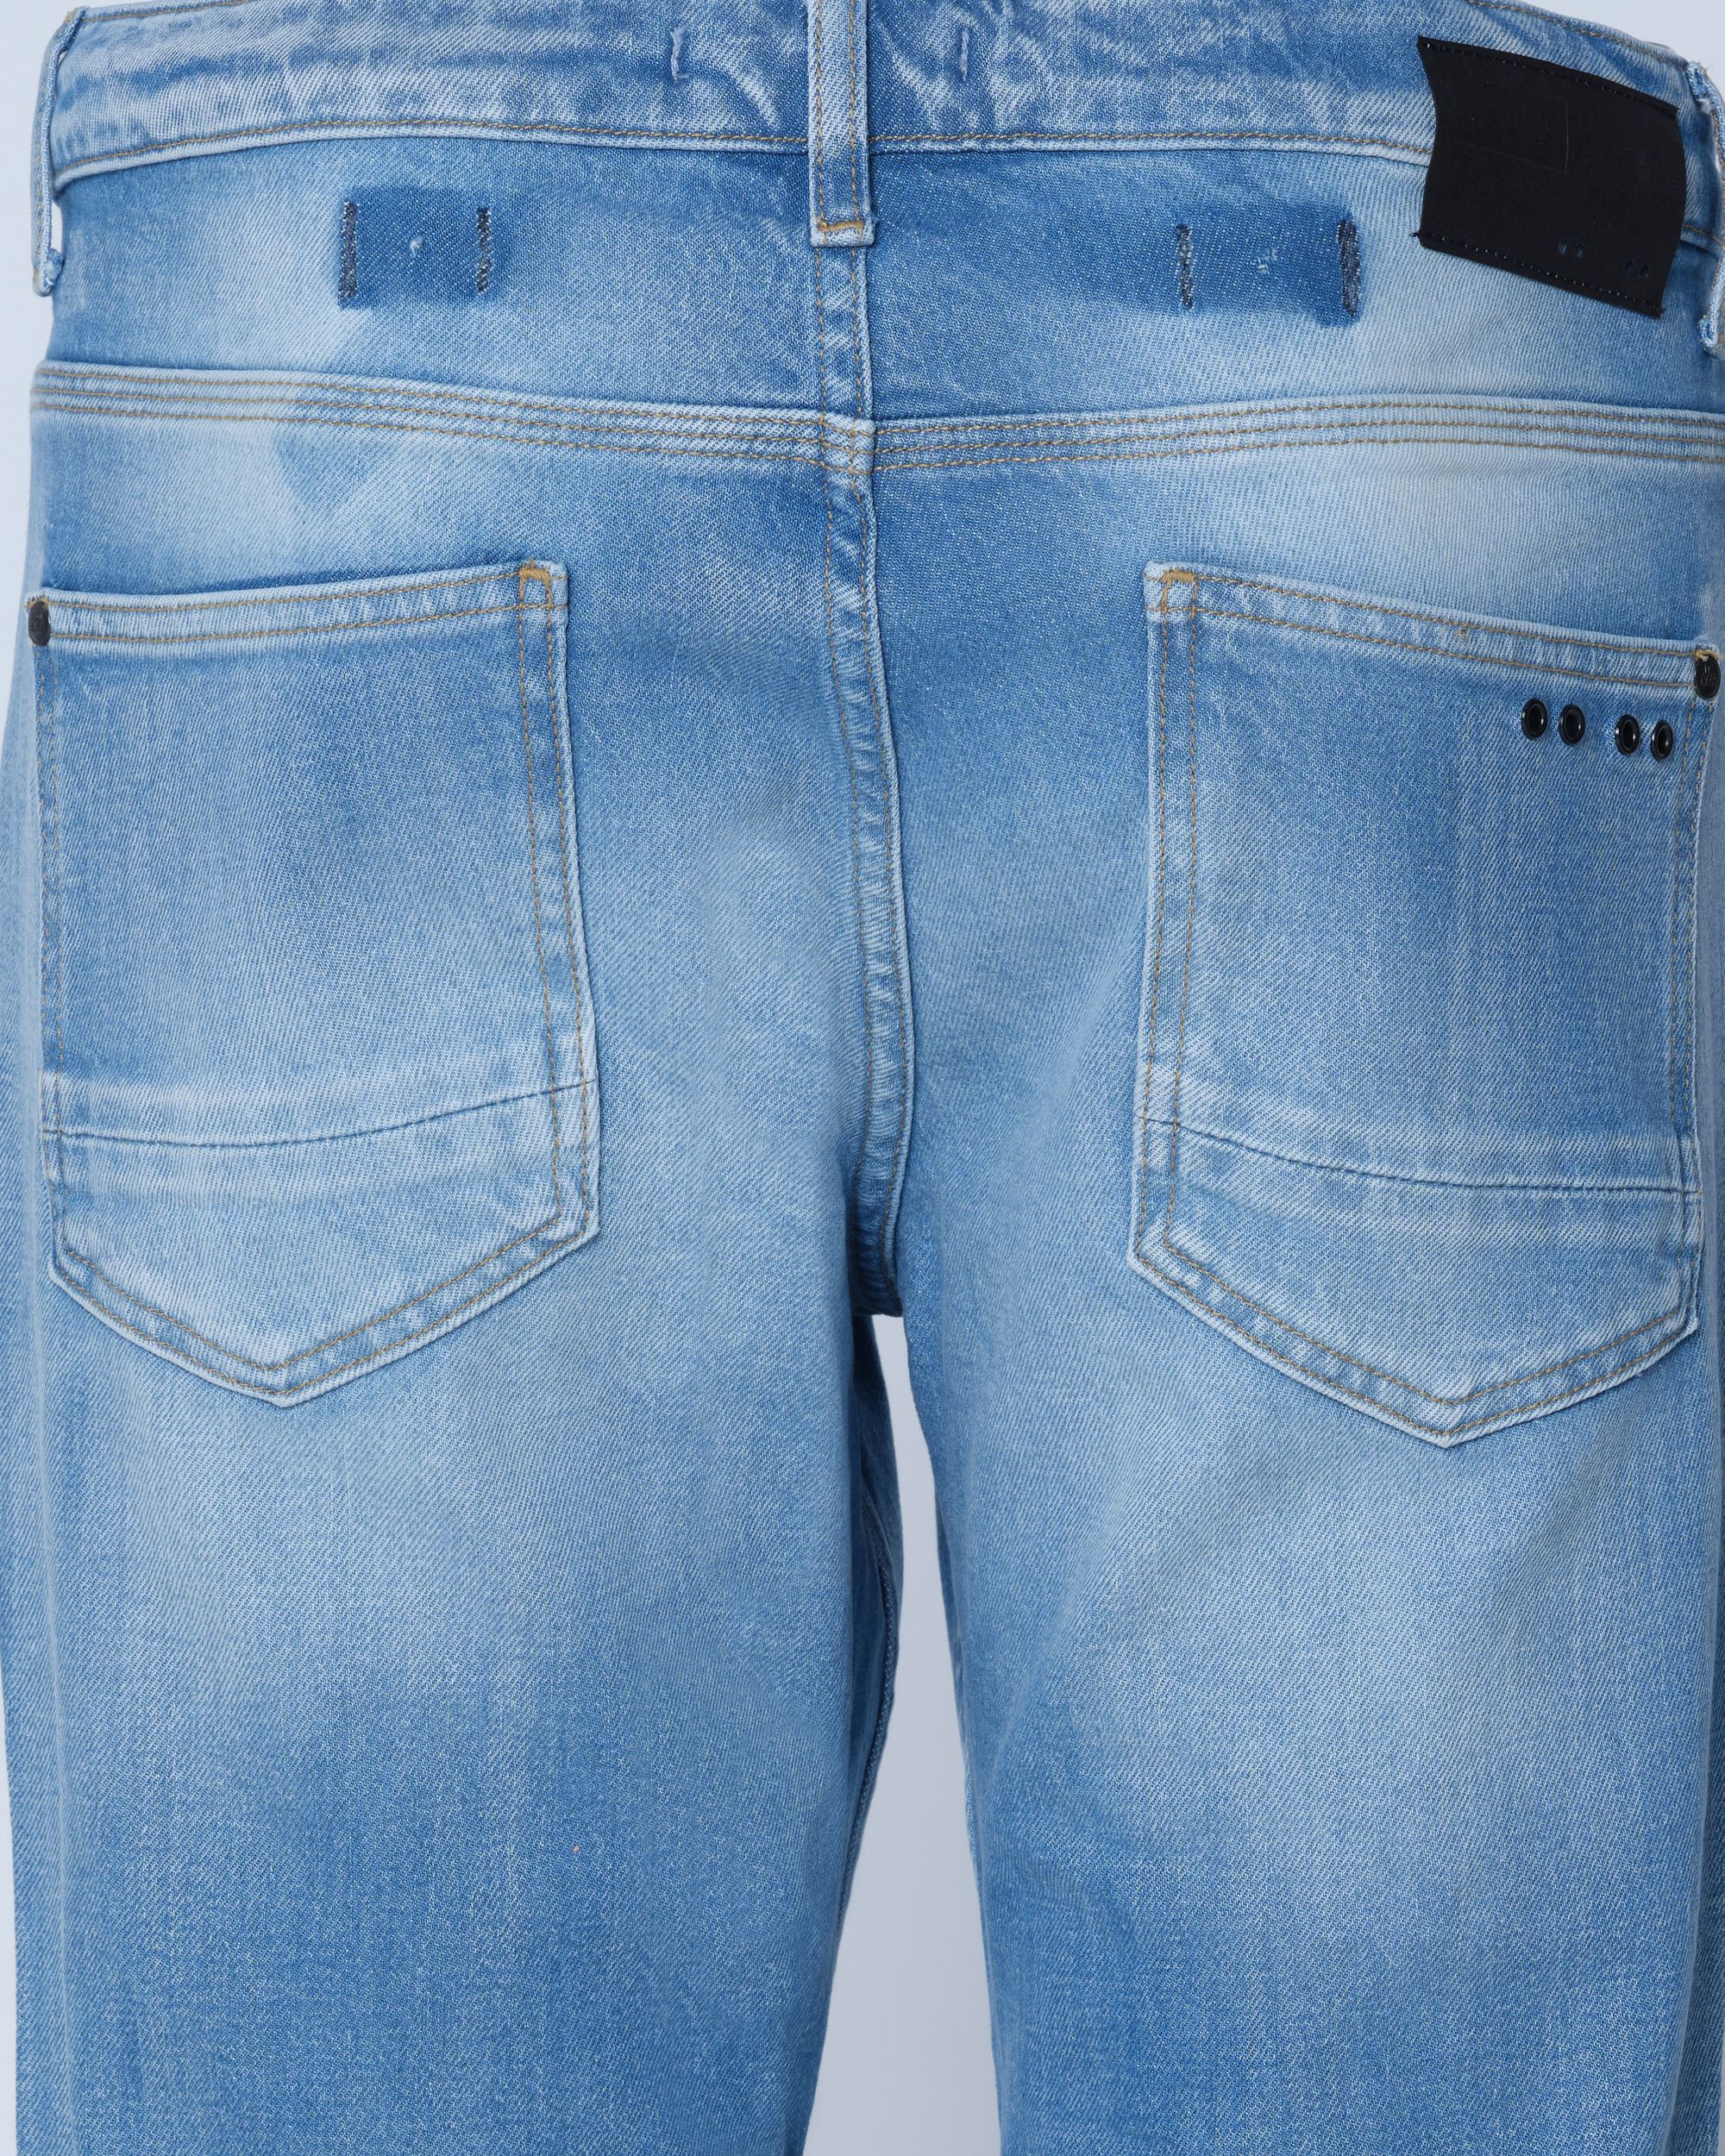 J.C. RAGS Jeans Mid Blue 082423-001-28/32